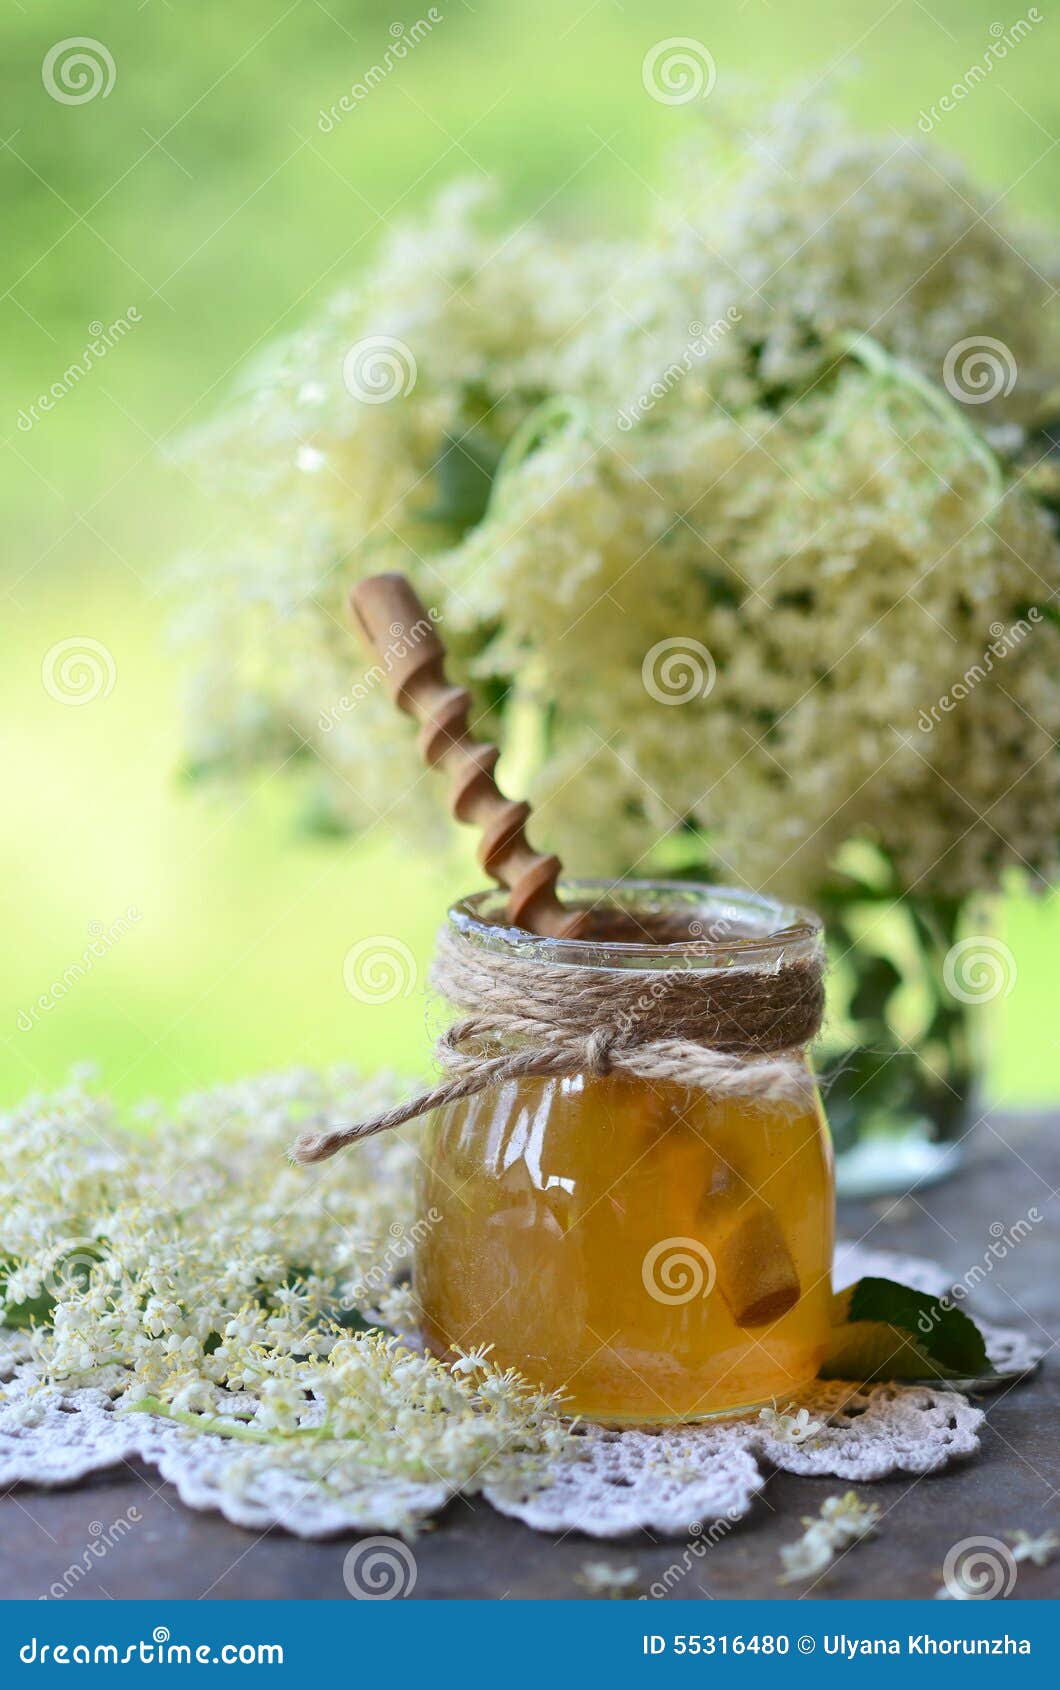 elderflower honey in jar